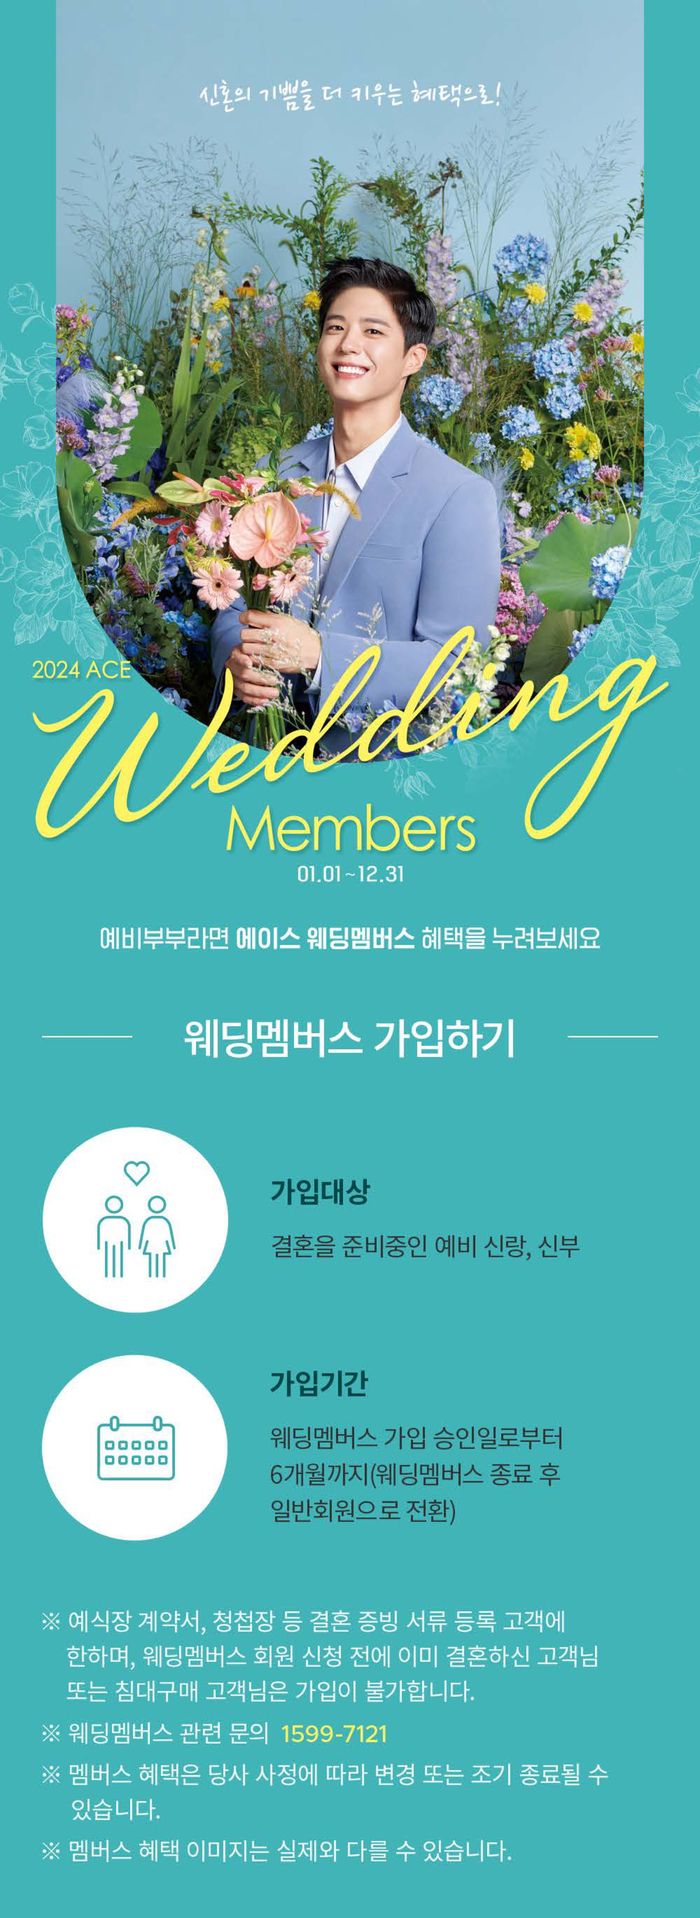 유성구의 에이스침대 카탈로그 | Weeding Members | 2024. 1. 26. - 2024. 12. 31.